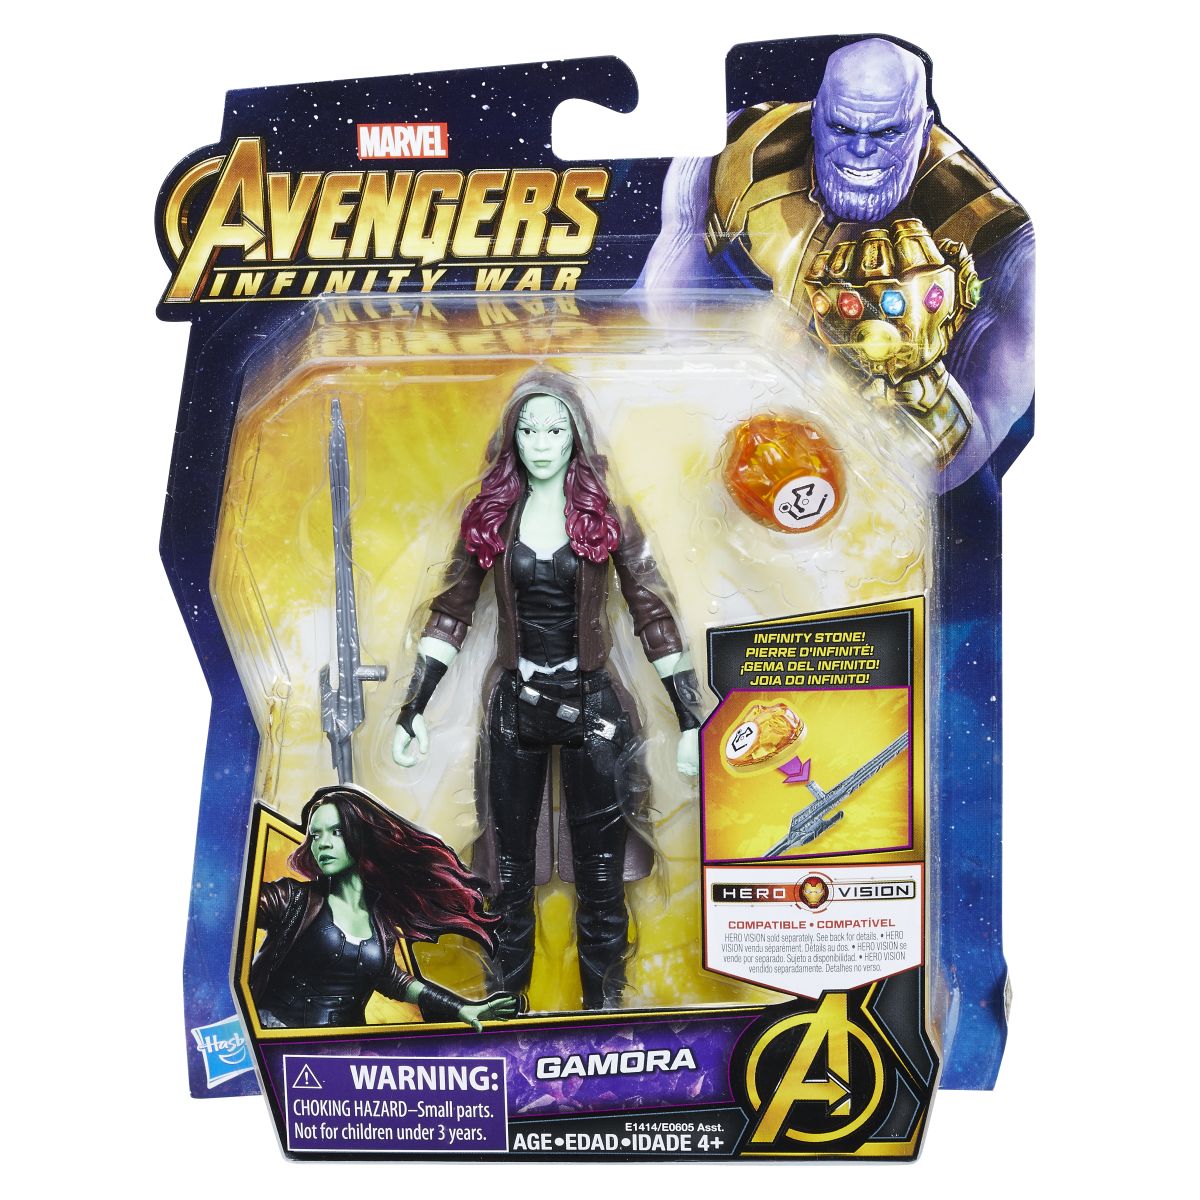 Marvel Avengers Infinity War 6 Inch Figure Assortment Gamora In Pkg